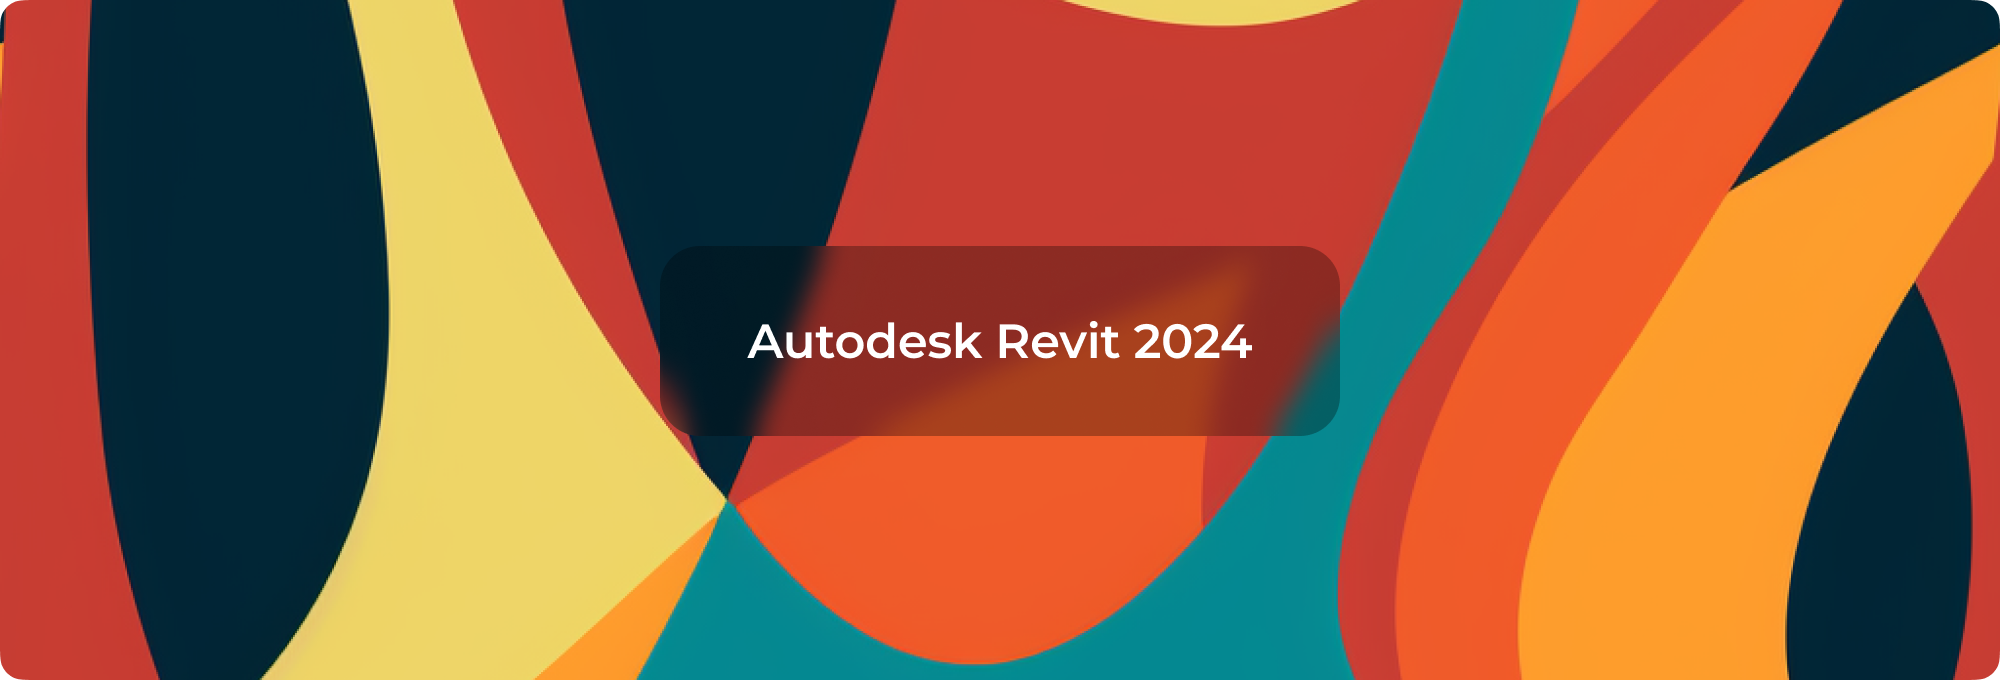 Autodesk Revit 2024: Революция в 3D-моделировании